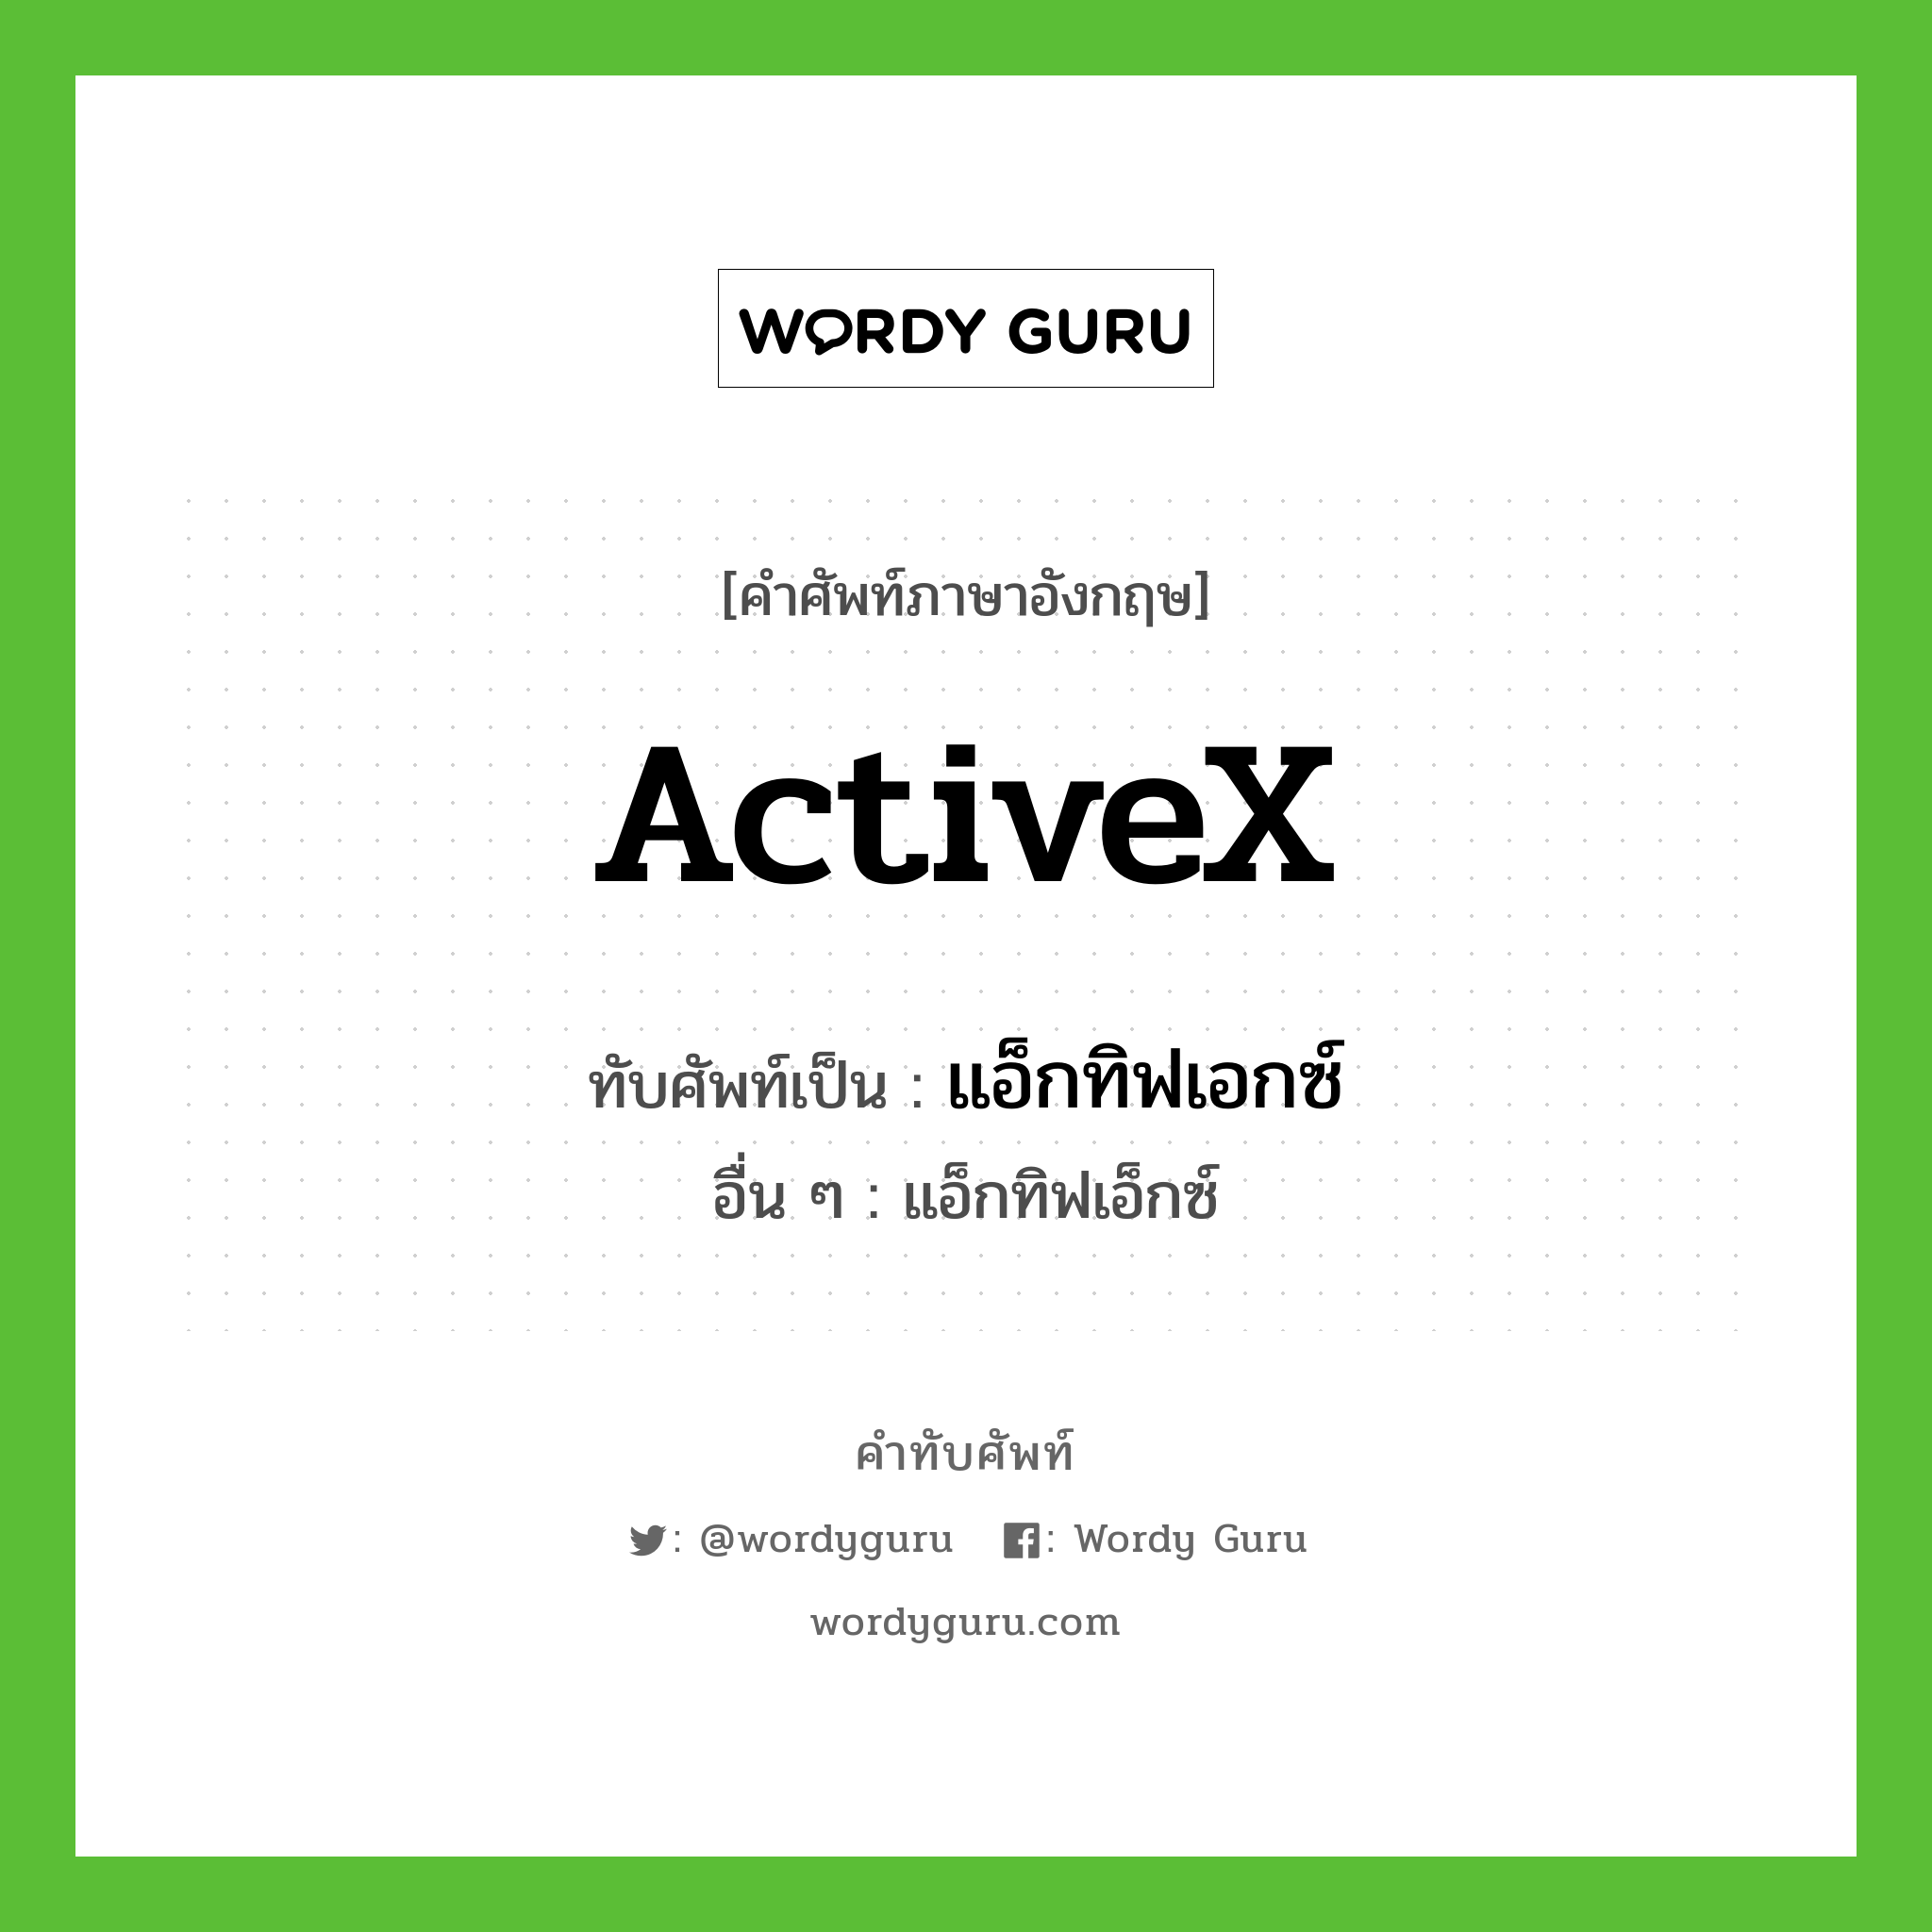 ActiveX เขียนเป็นคำไทยว่าอะไร?, คำศัพท์ภาษาอังกฤษ ActiveX ทับศัพท์เป็น แอ็กทิฟเอกซ์ อื่น ๆ แอ็กทิฟเอ็กซ์